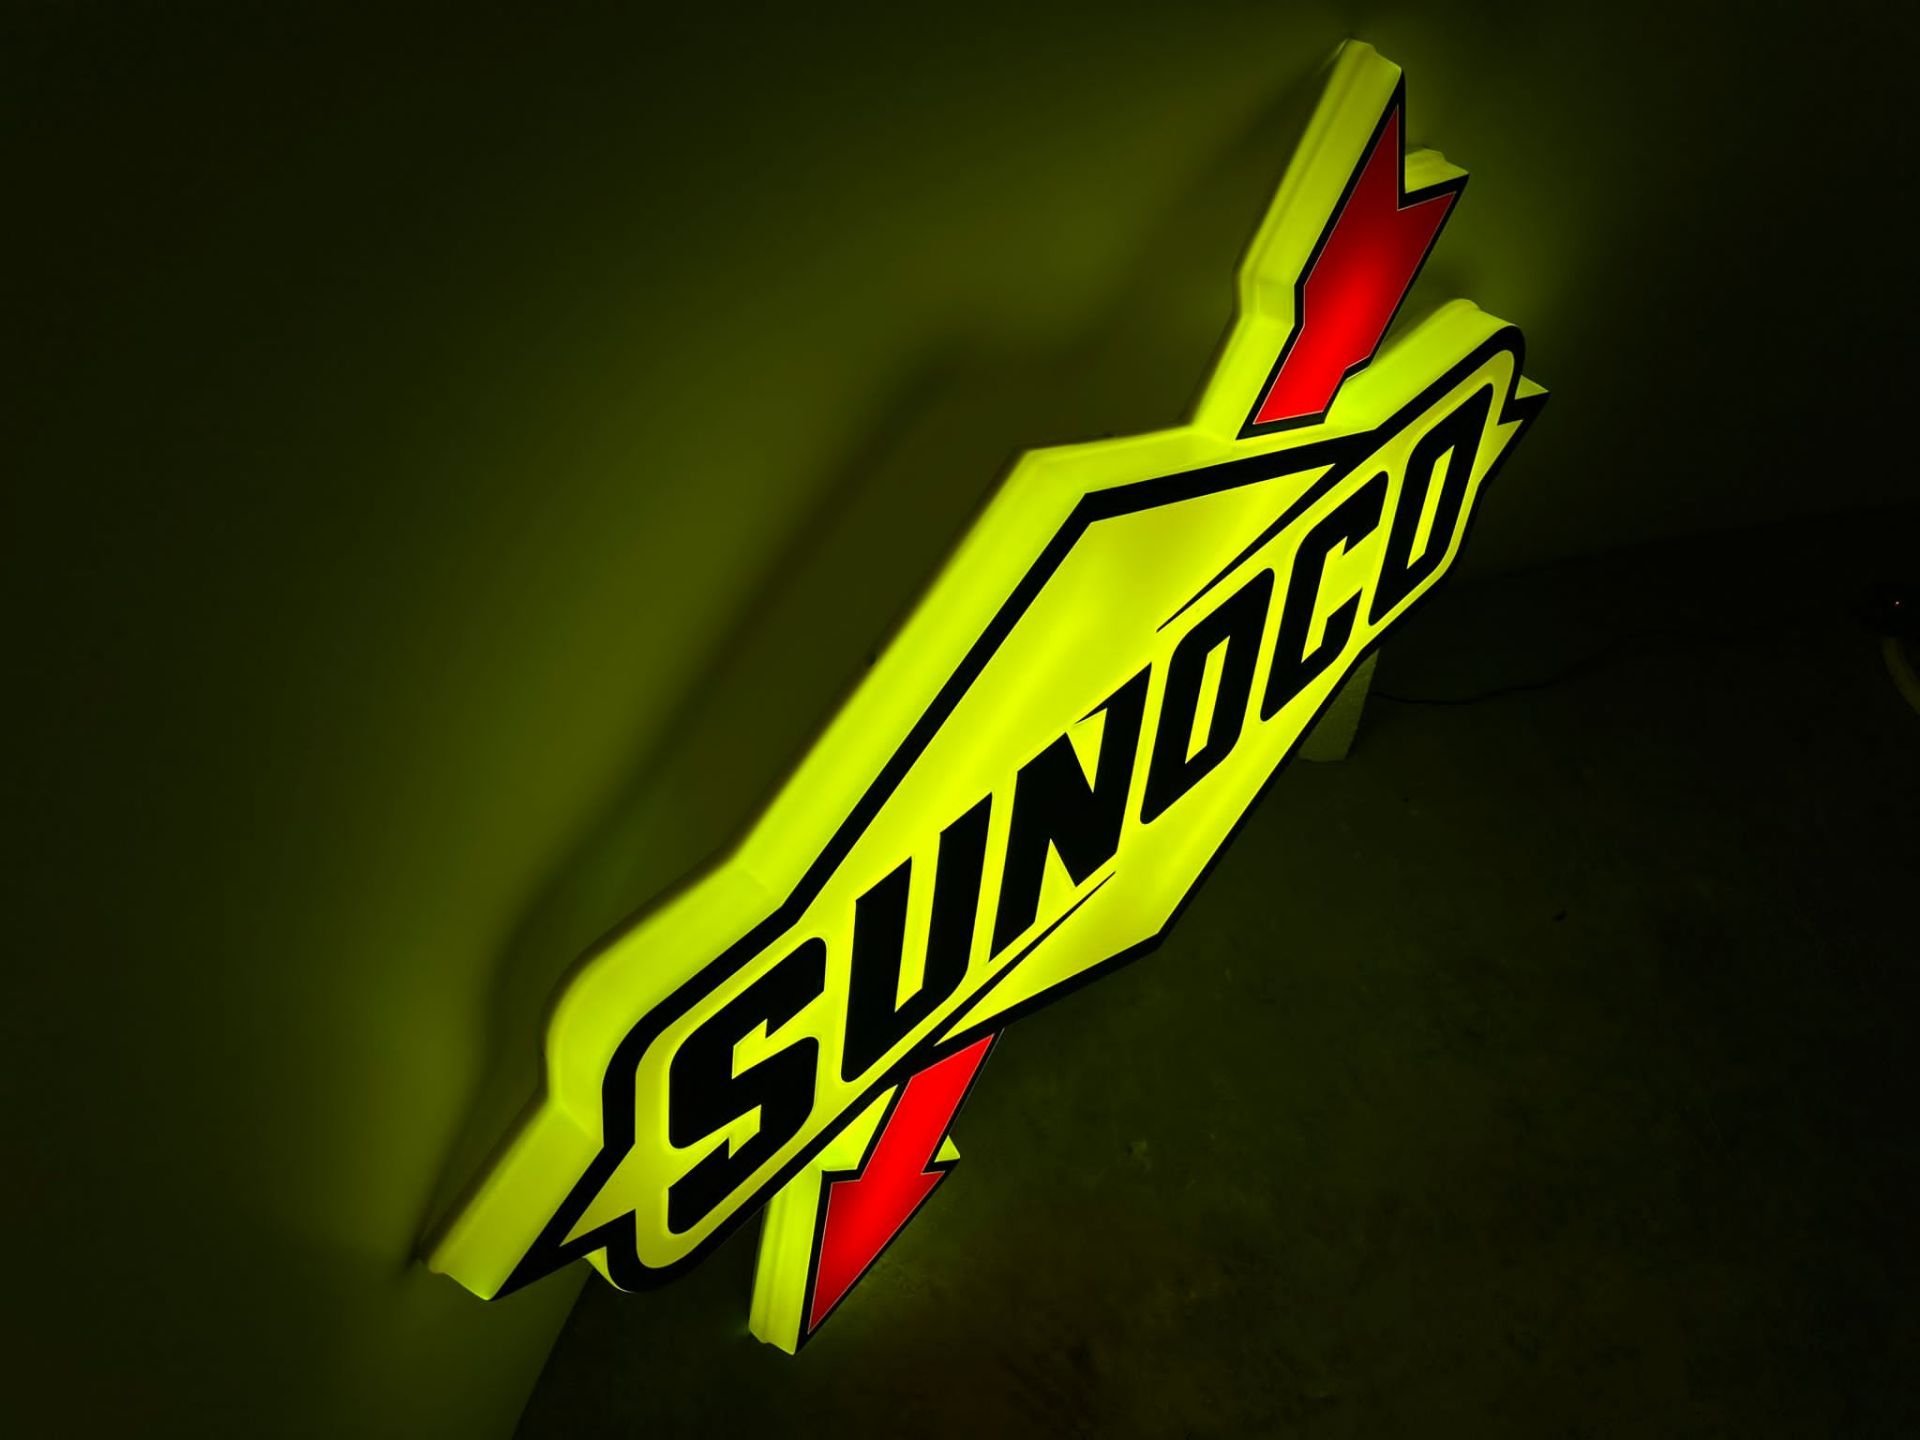 Sunoco illuminated sign - Image 5 of 6